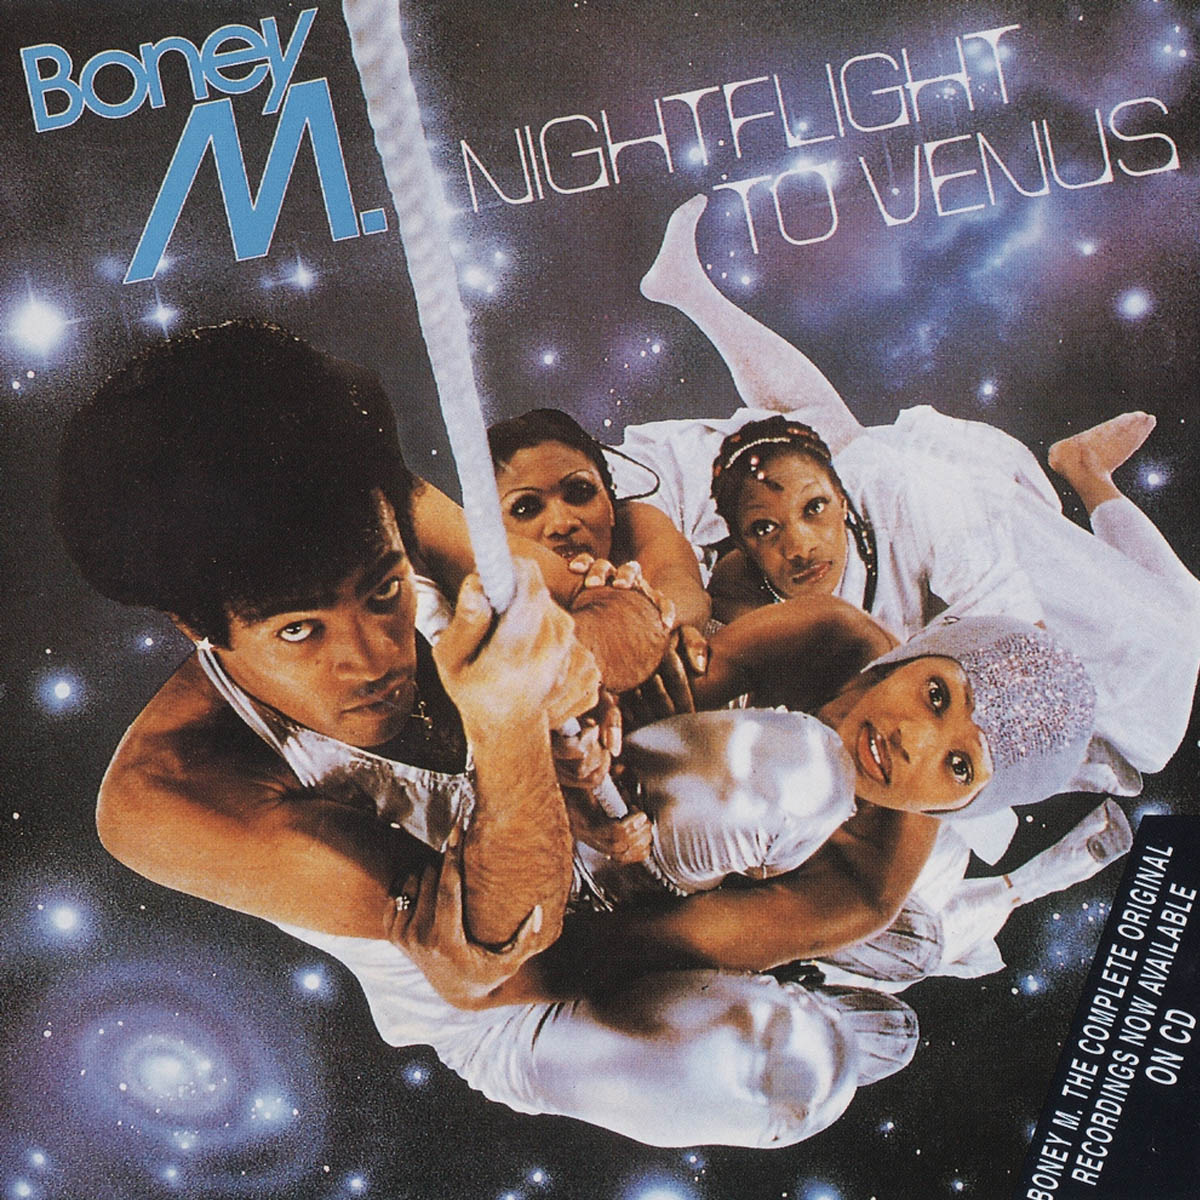 Cover des Albums "Nightflight to Venus" (1078) von Boney M.